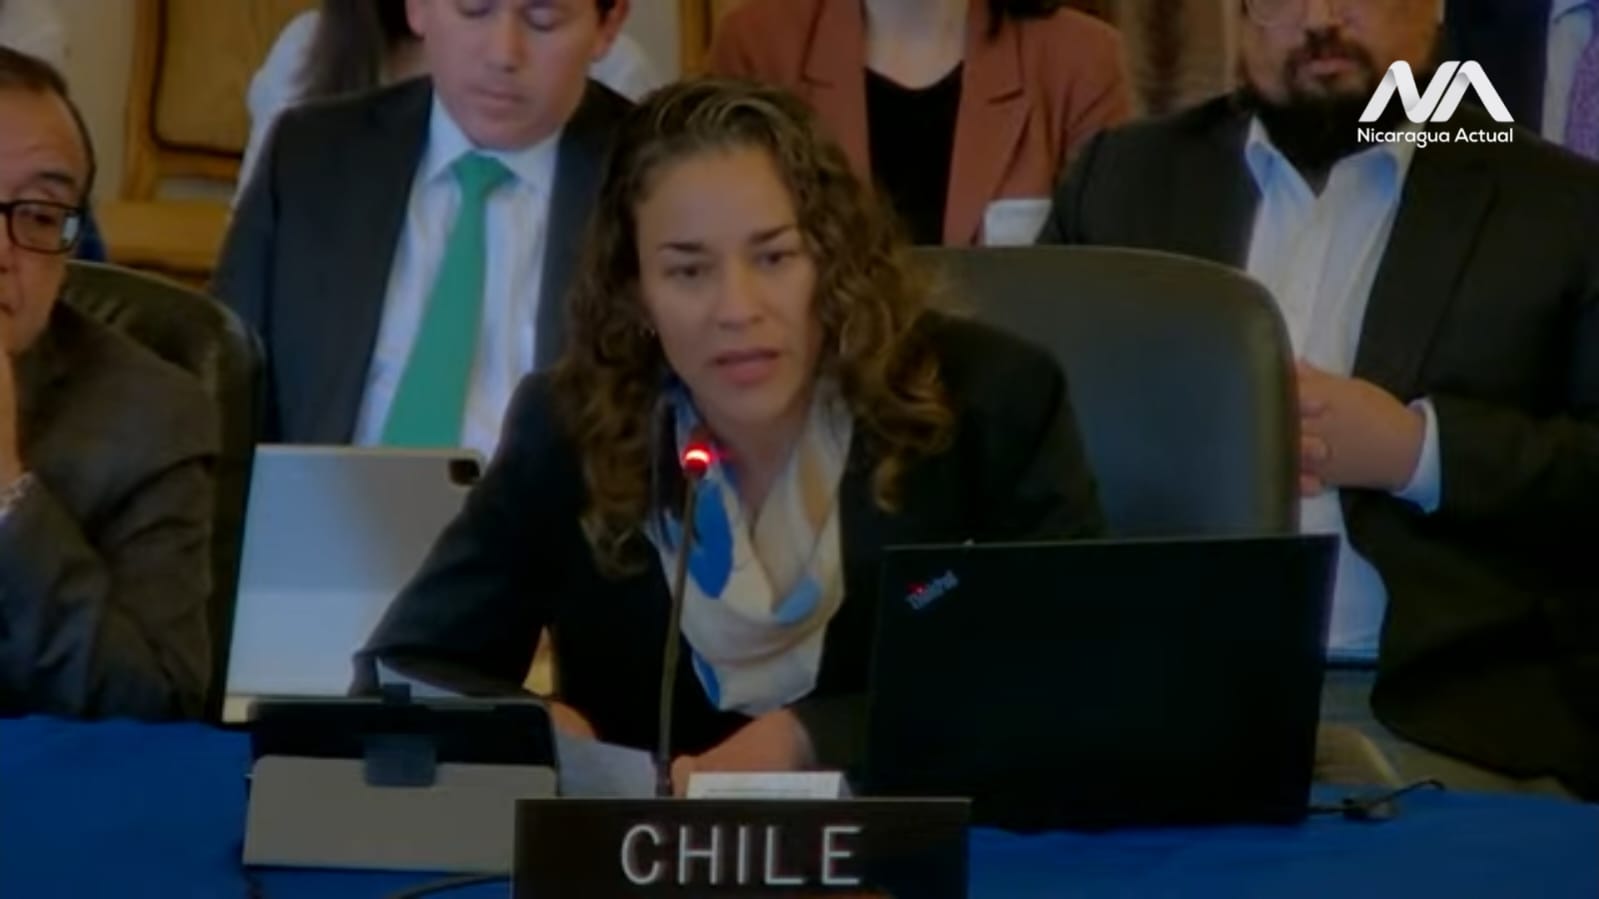 Tamara Dávila denuncia ante la OEA crímenes y torturas de la dictadura Sandinista /Nicaragua Actual